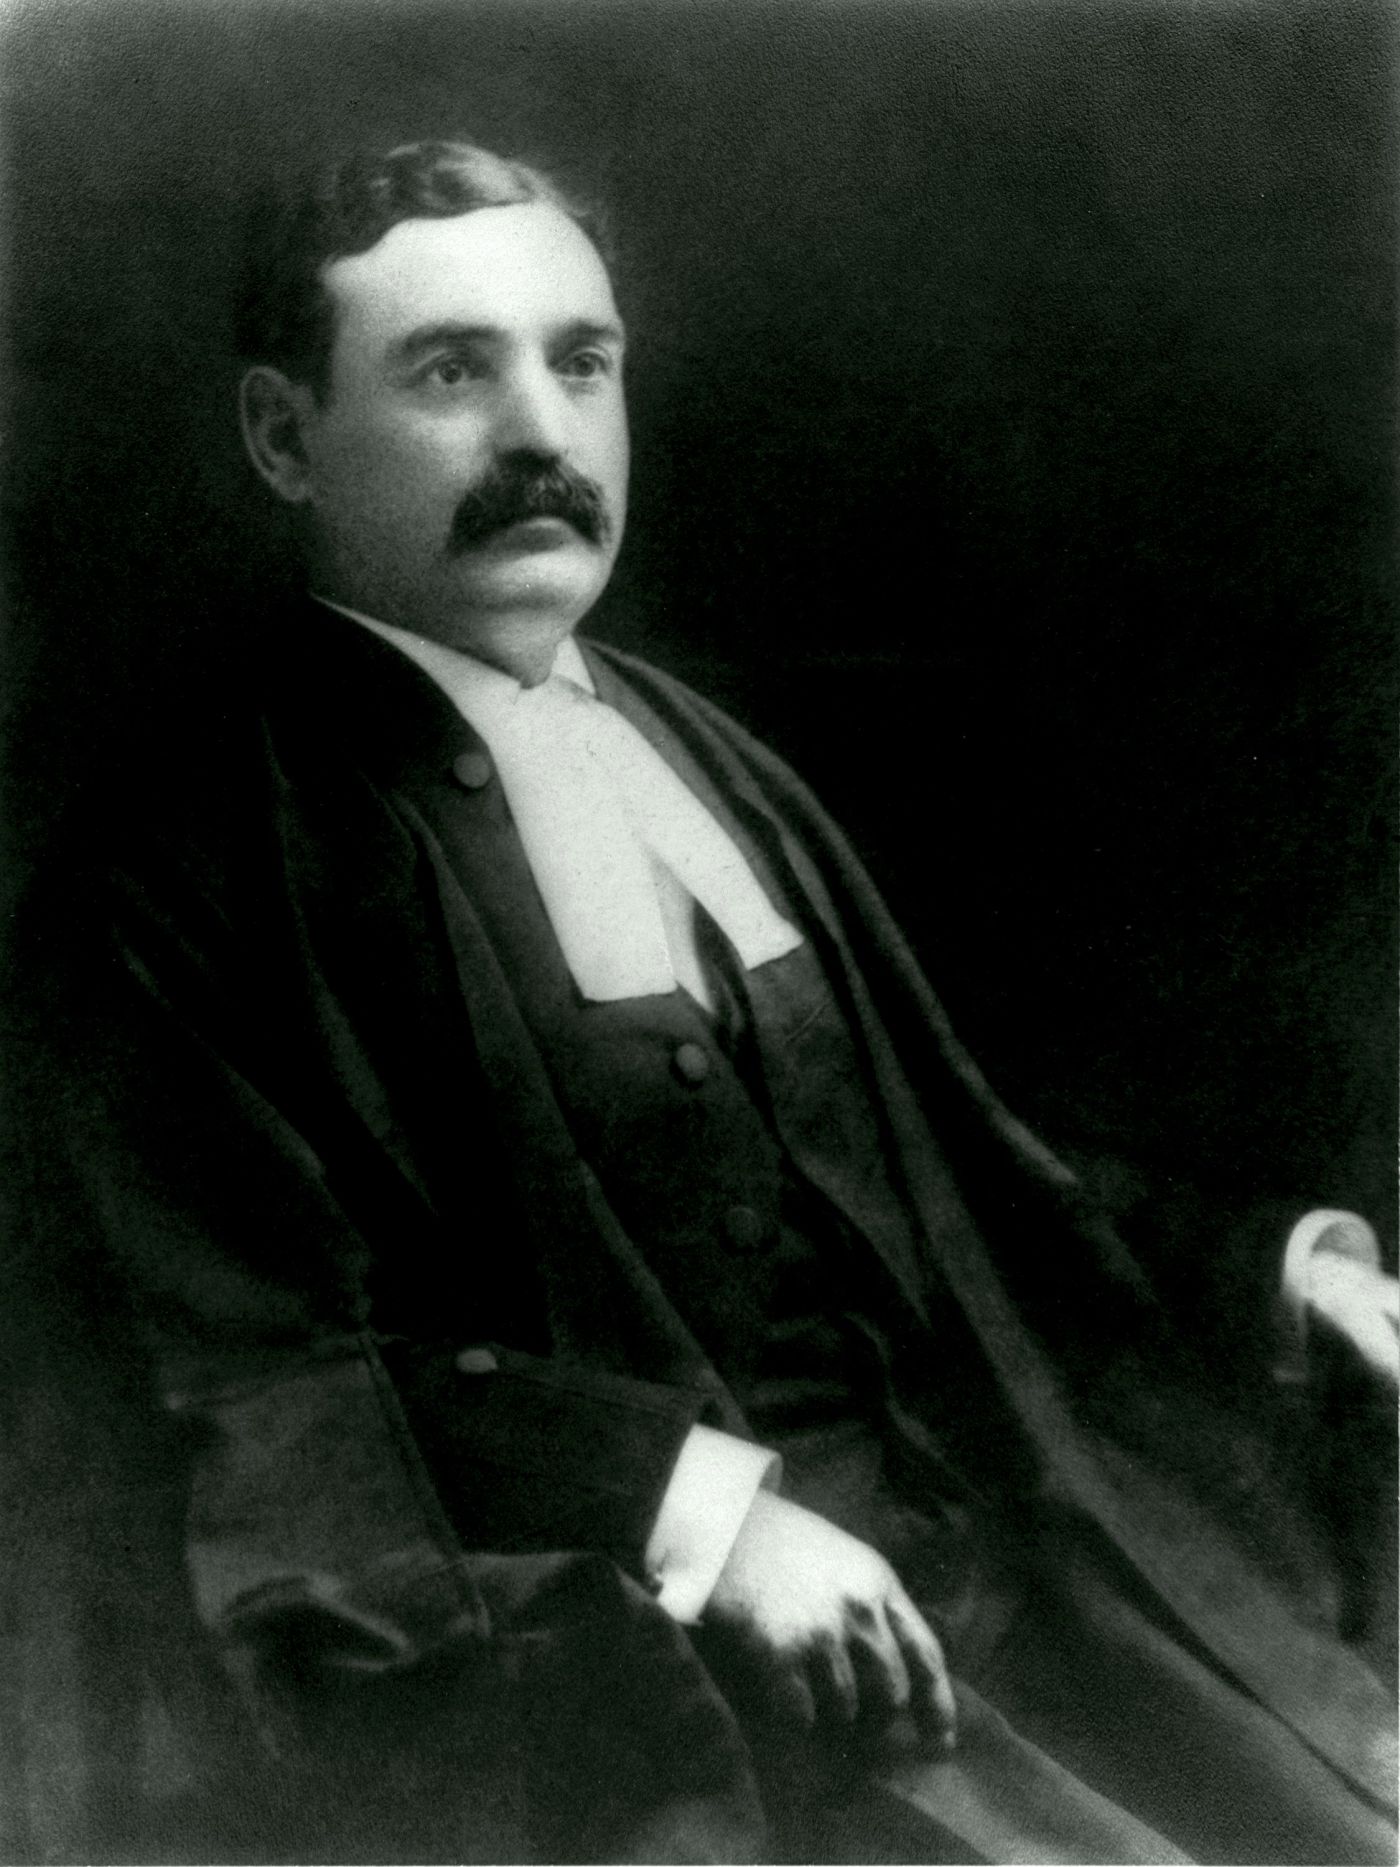 Photographie prise en studio, en noir et blanc, d’un homme d’âge moyen, arborant la moustache.  Il porte la toge ample et longue et le col blanc des avocats.